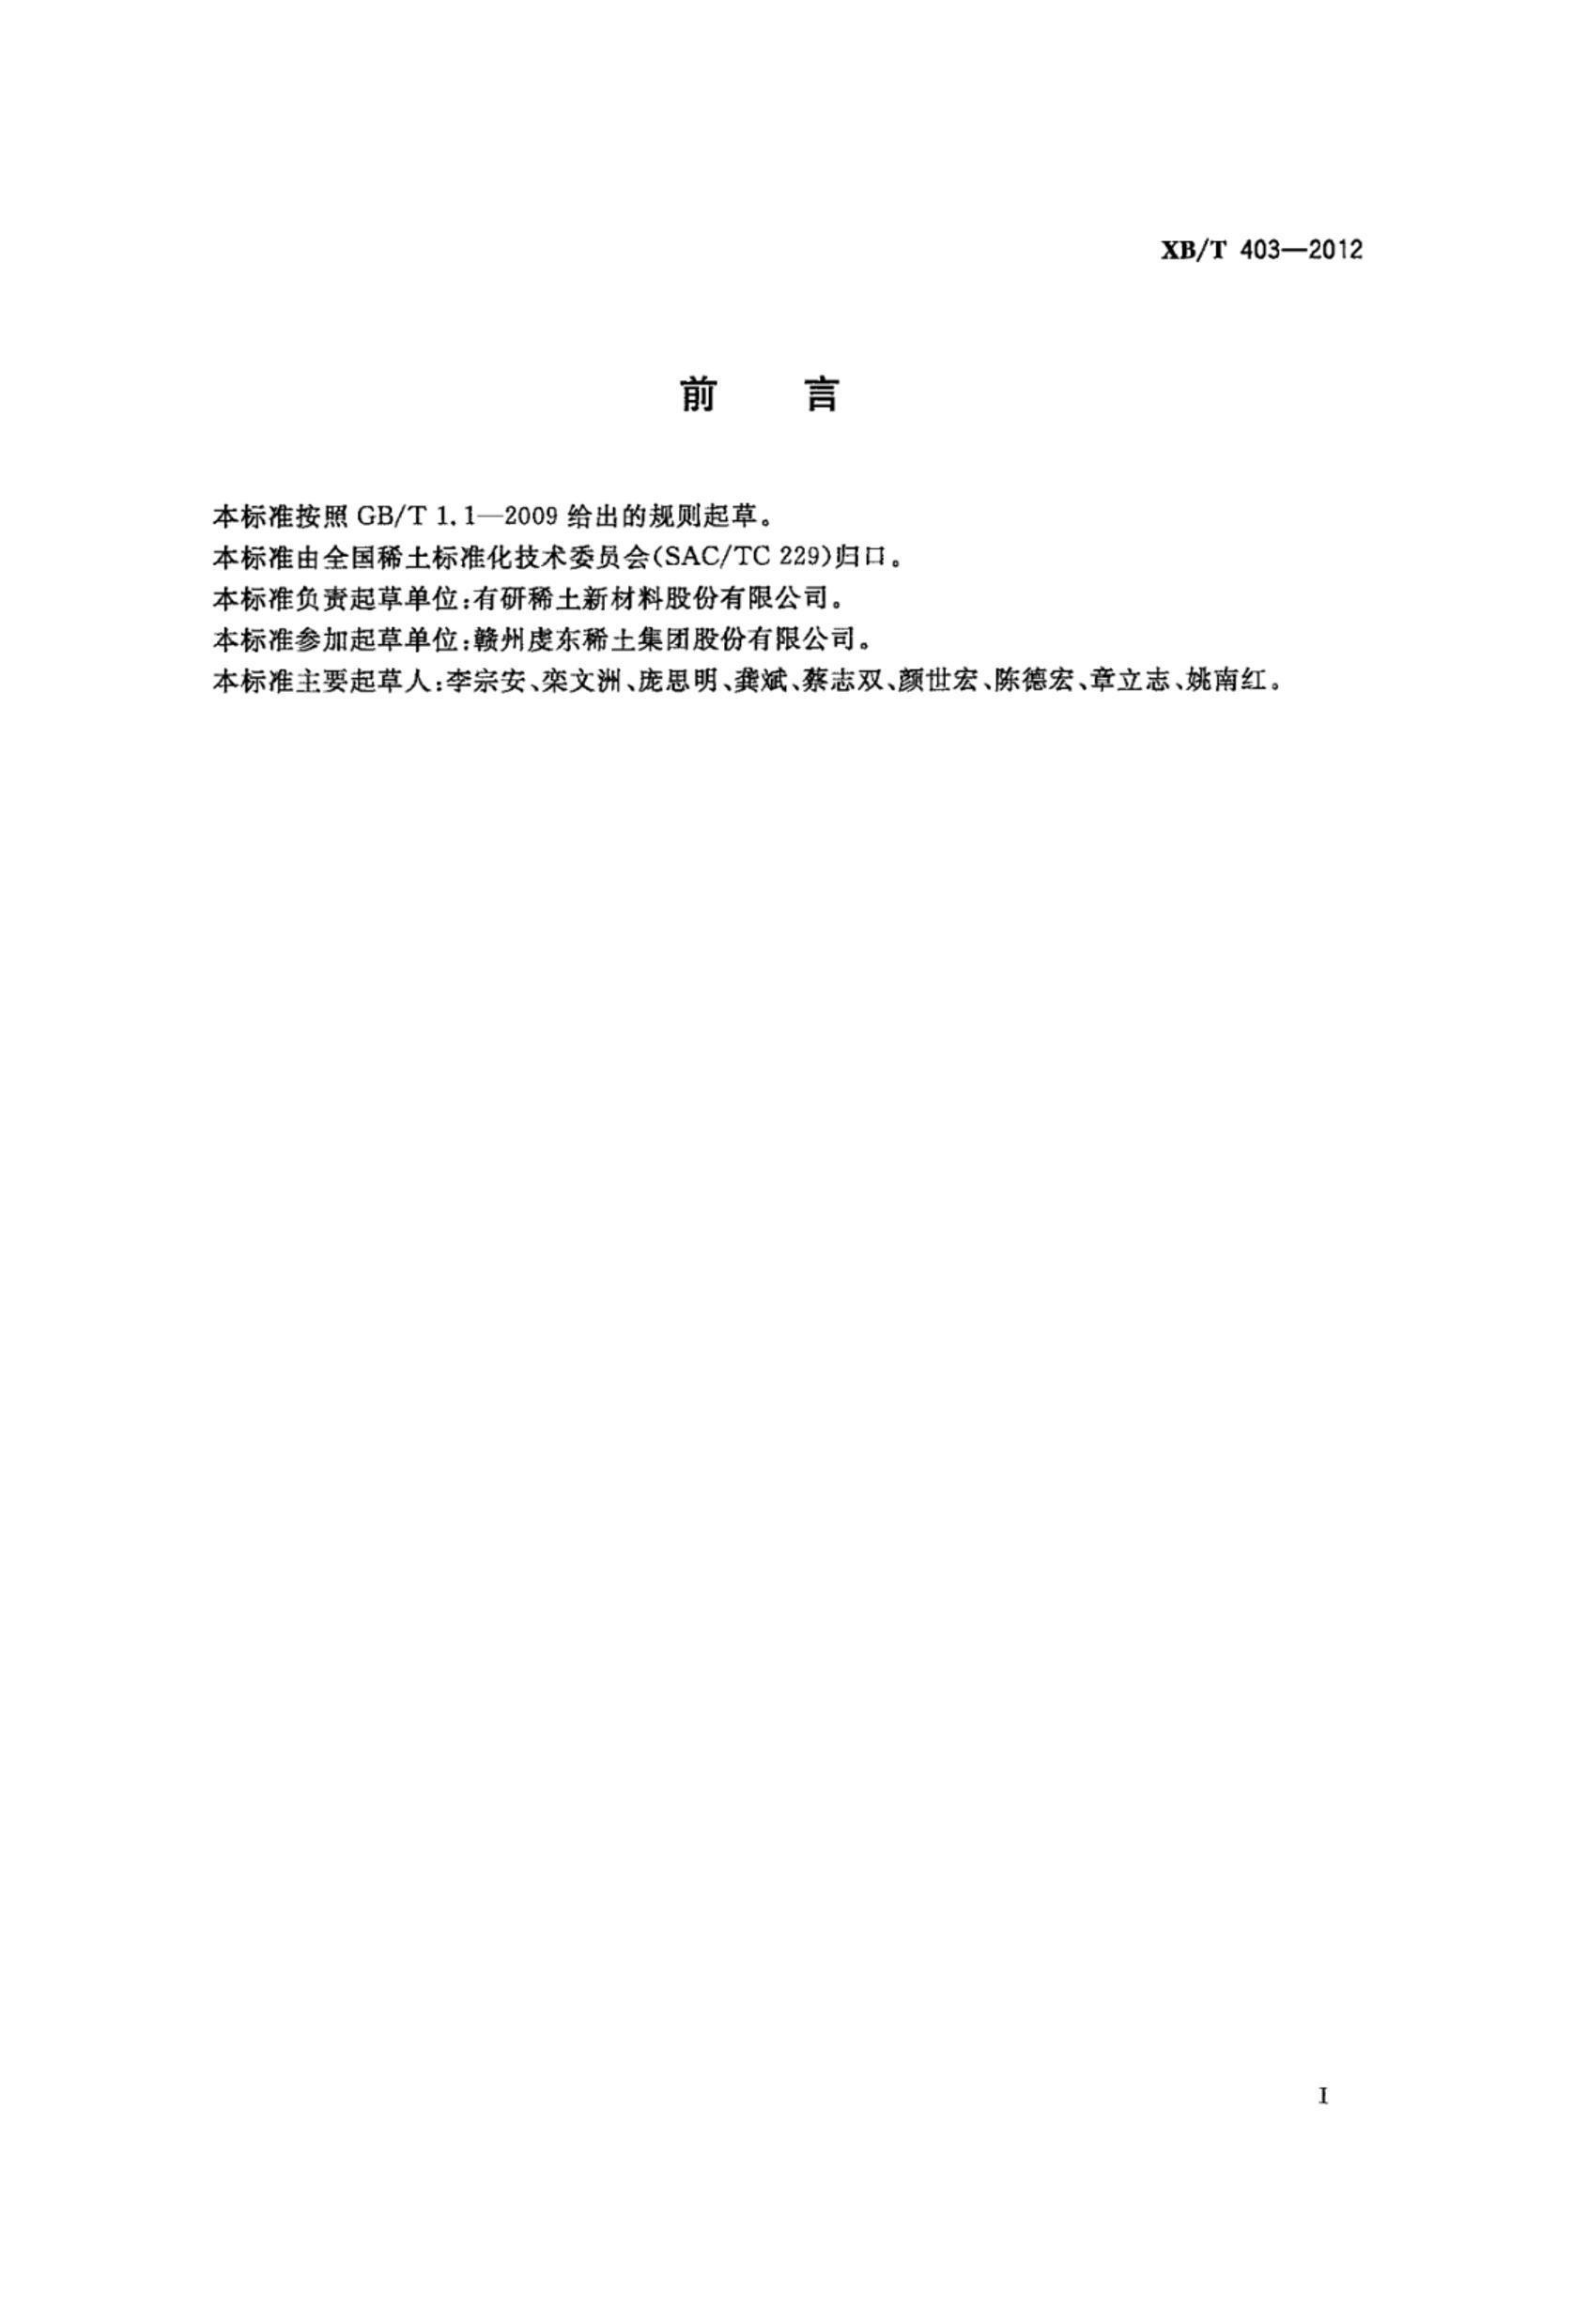 XBT 403-2012 Ͻ.pdf2ҳ